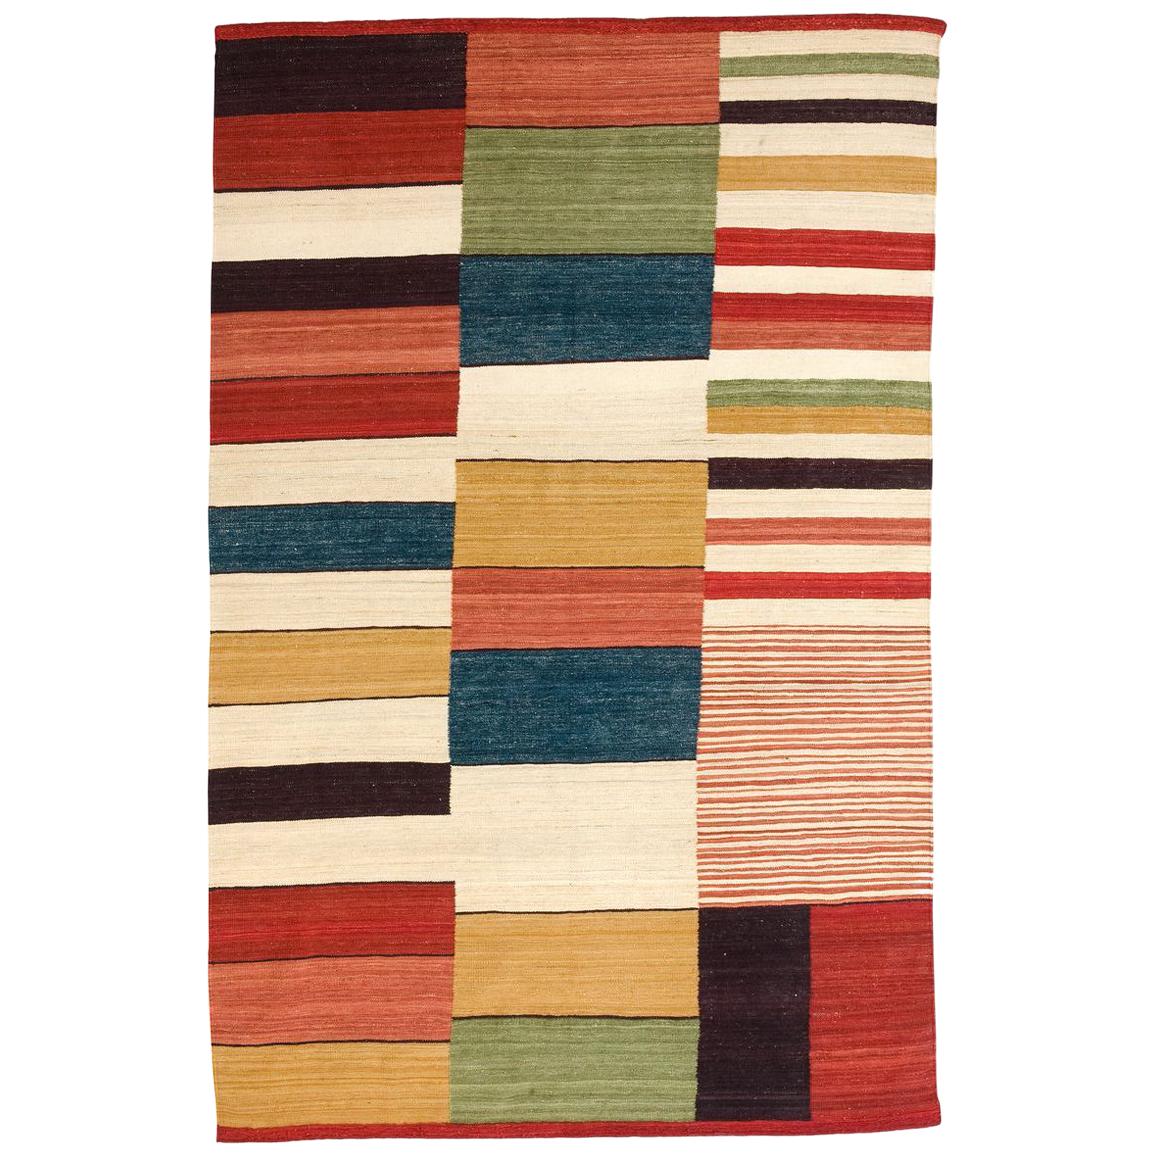 Large Medina 2 Hand-Loomed Afghan Wool Kilim Rug by Nani Marquina in Stock